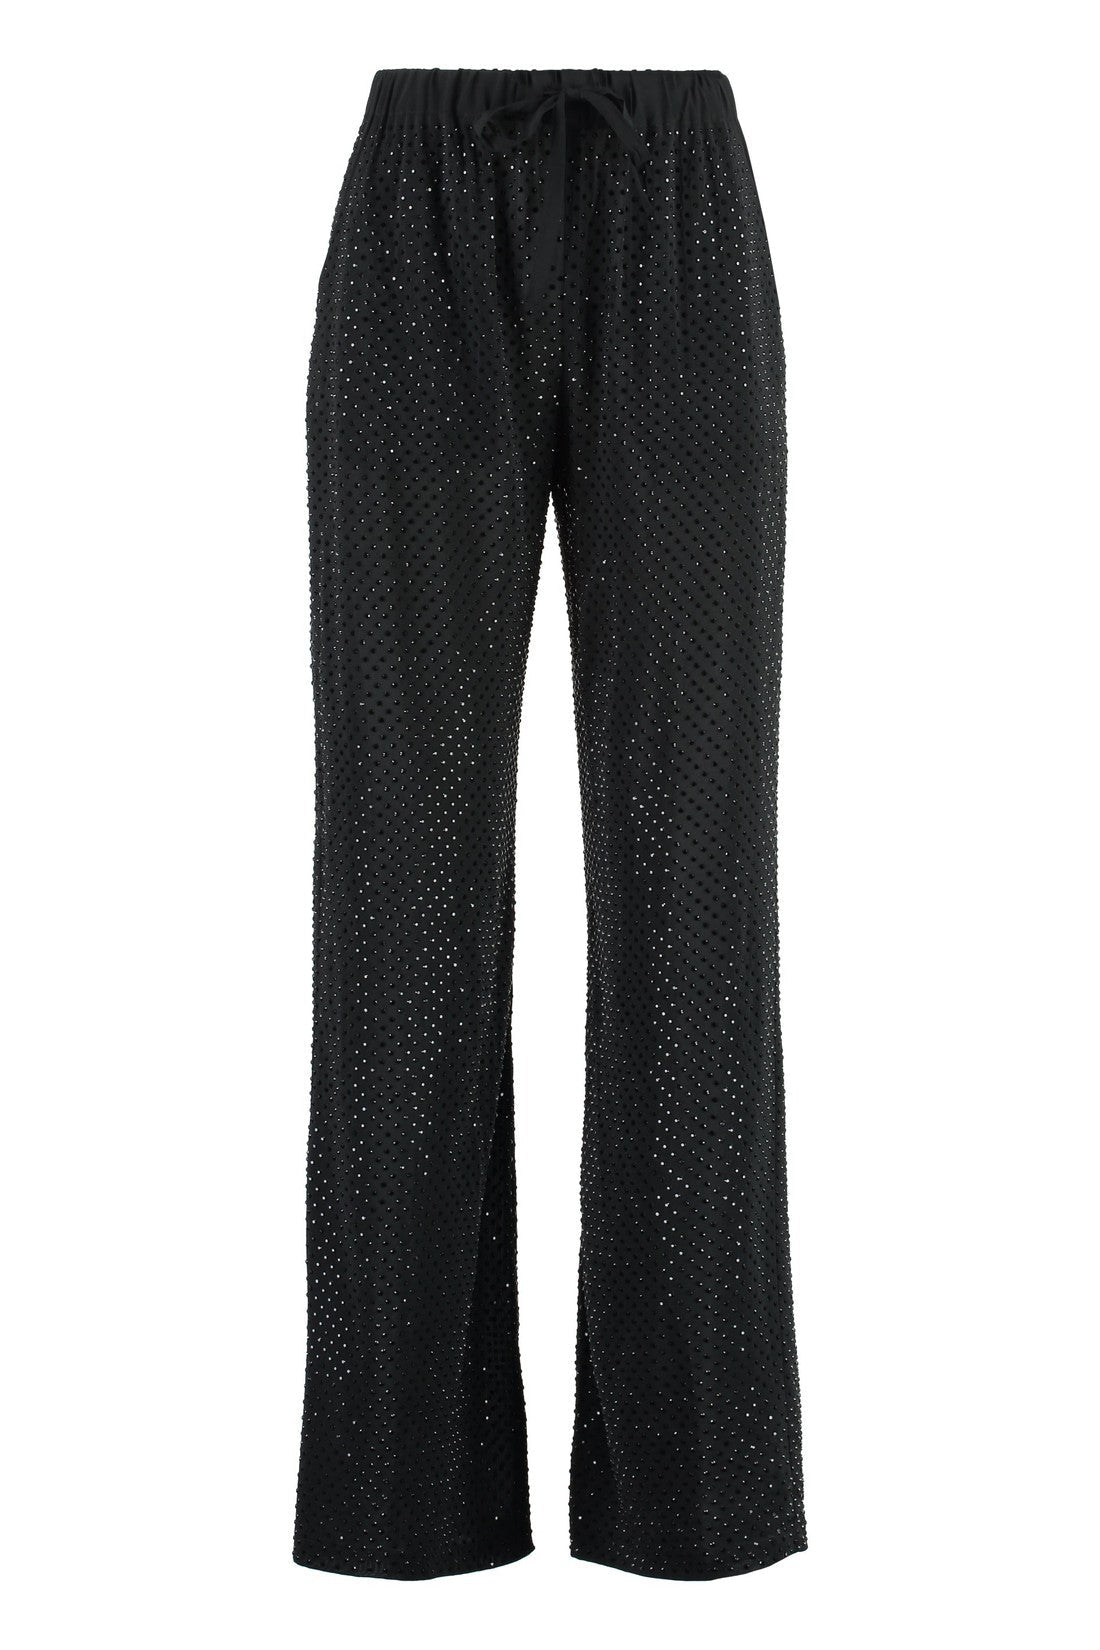 Parosh-OUTLET-SALE-Petal trousers with rhinestones-ARCHIVIST